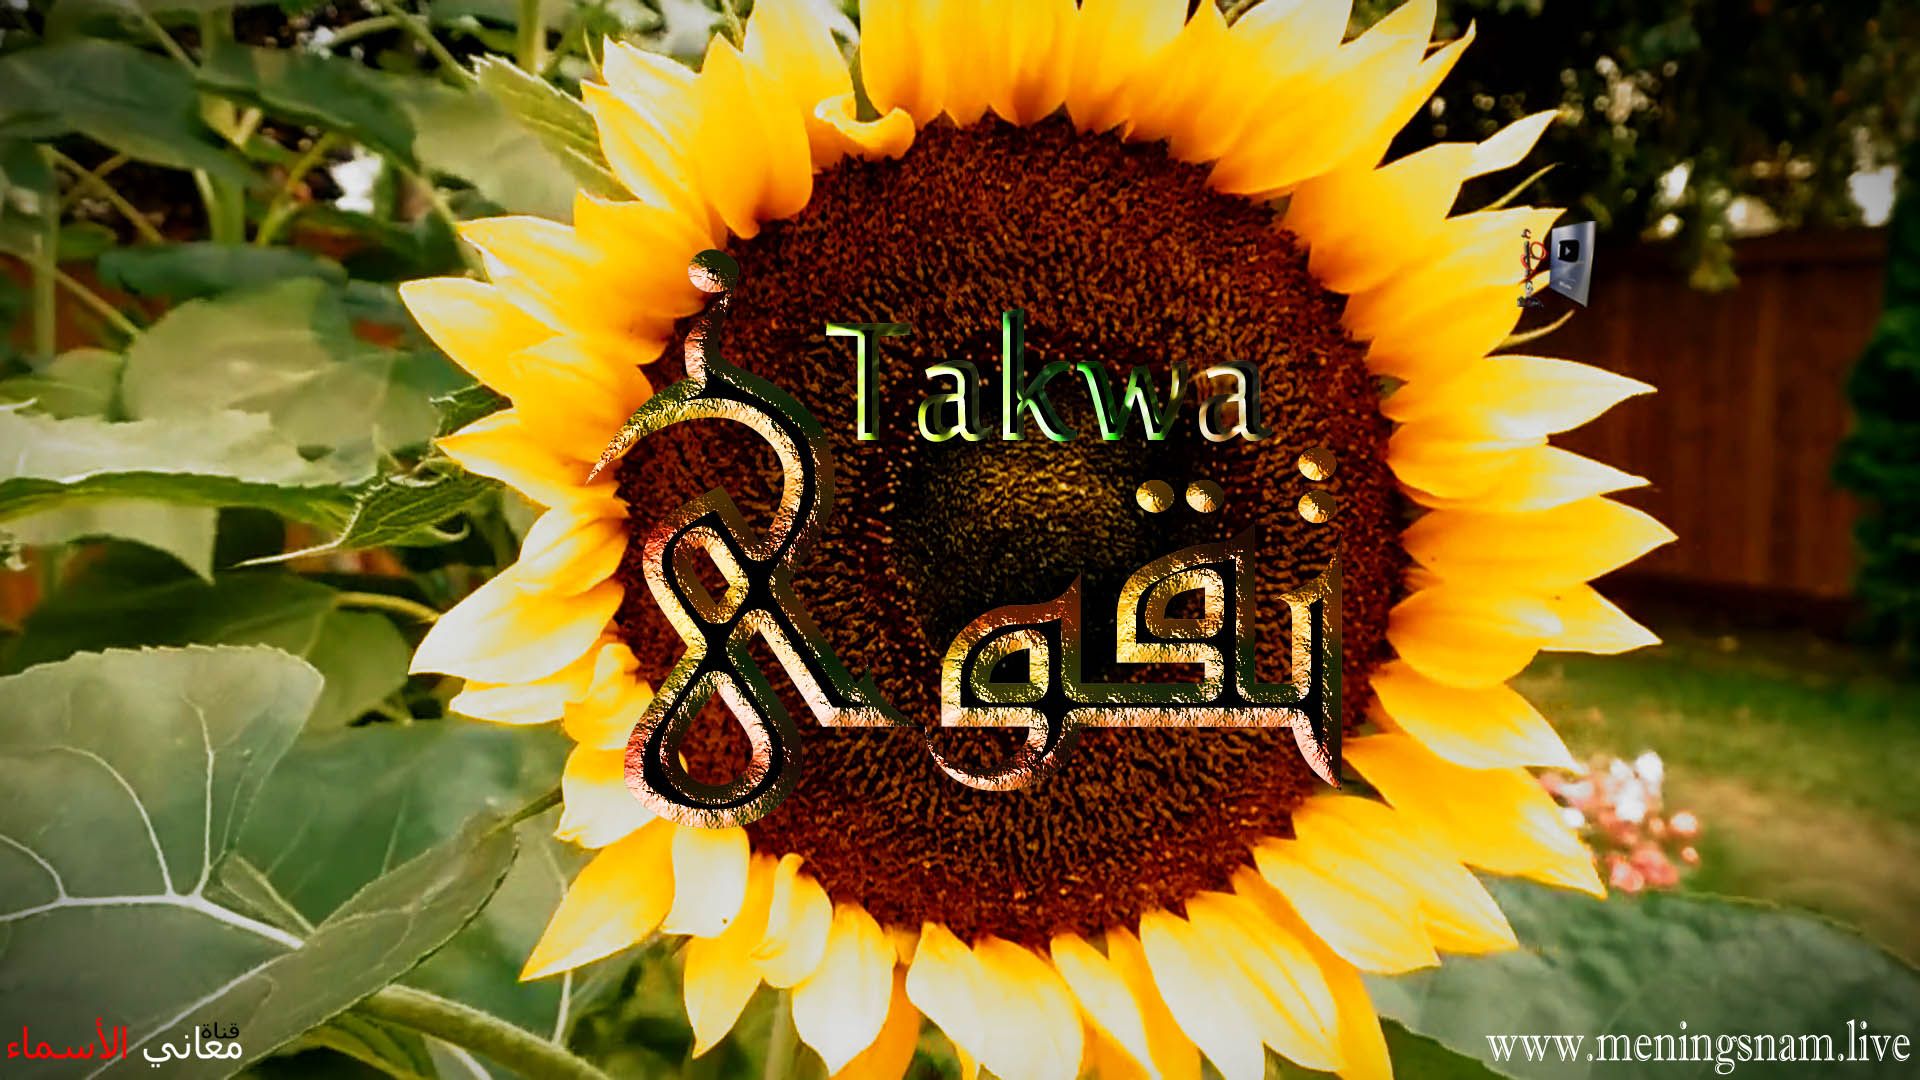 معنى اسم, تقوى, وصفات, حاملة, هذا الاسم, Taqwa,